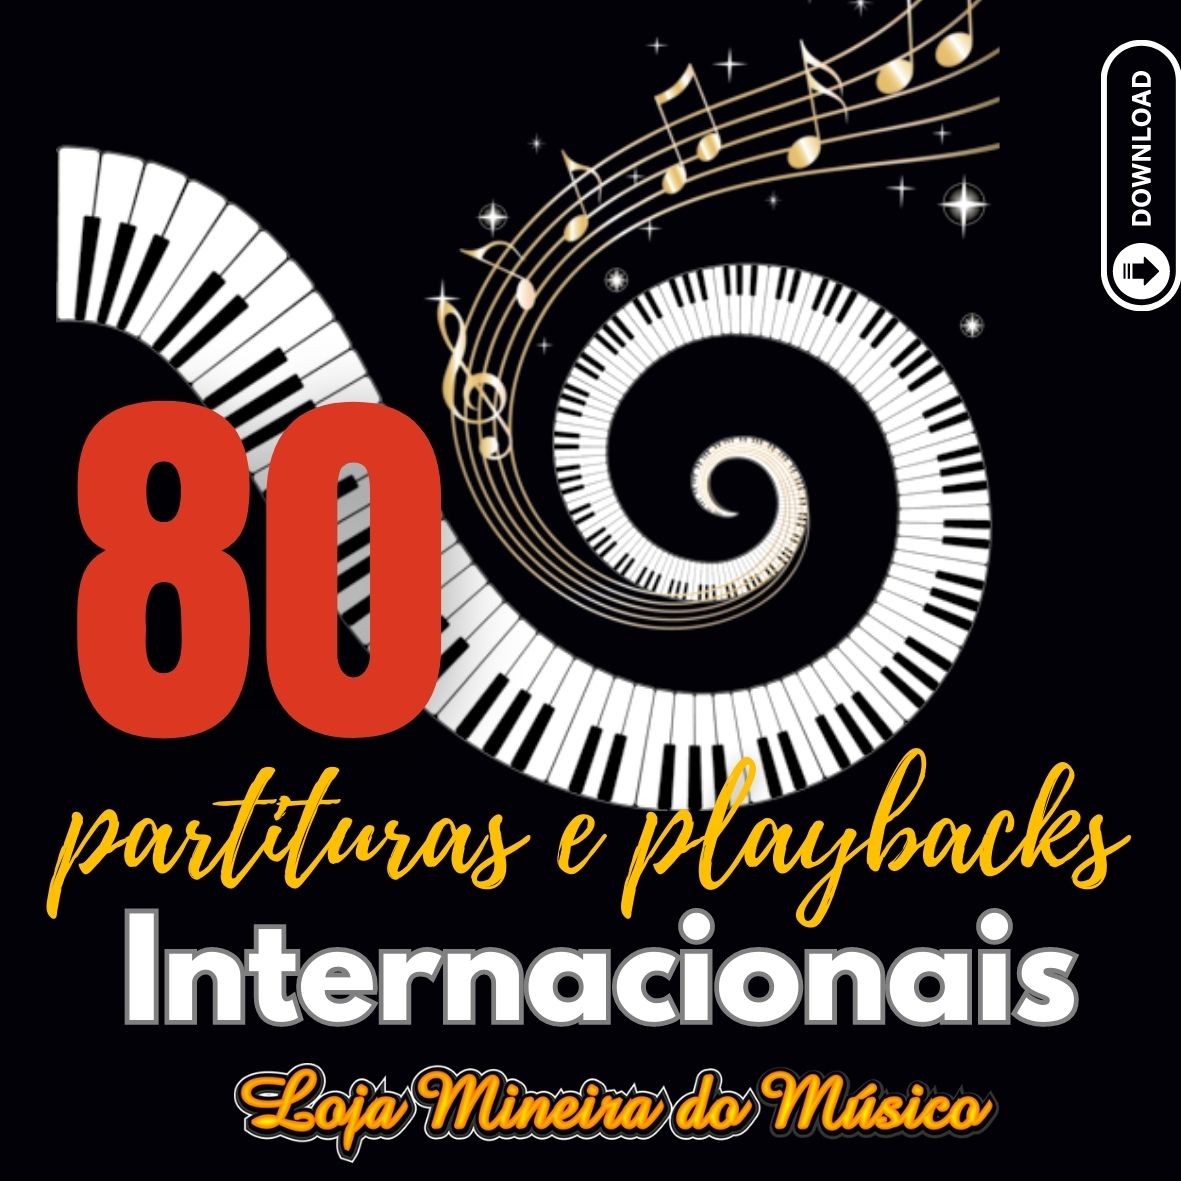 SAXOFONE ALTO 80 Partituras Internacionais em PDF com Playbacks Saxofone Mi Bemol